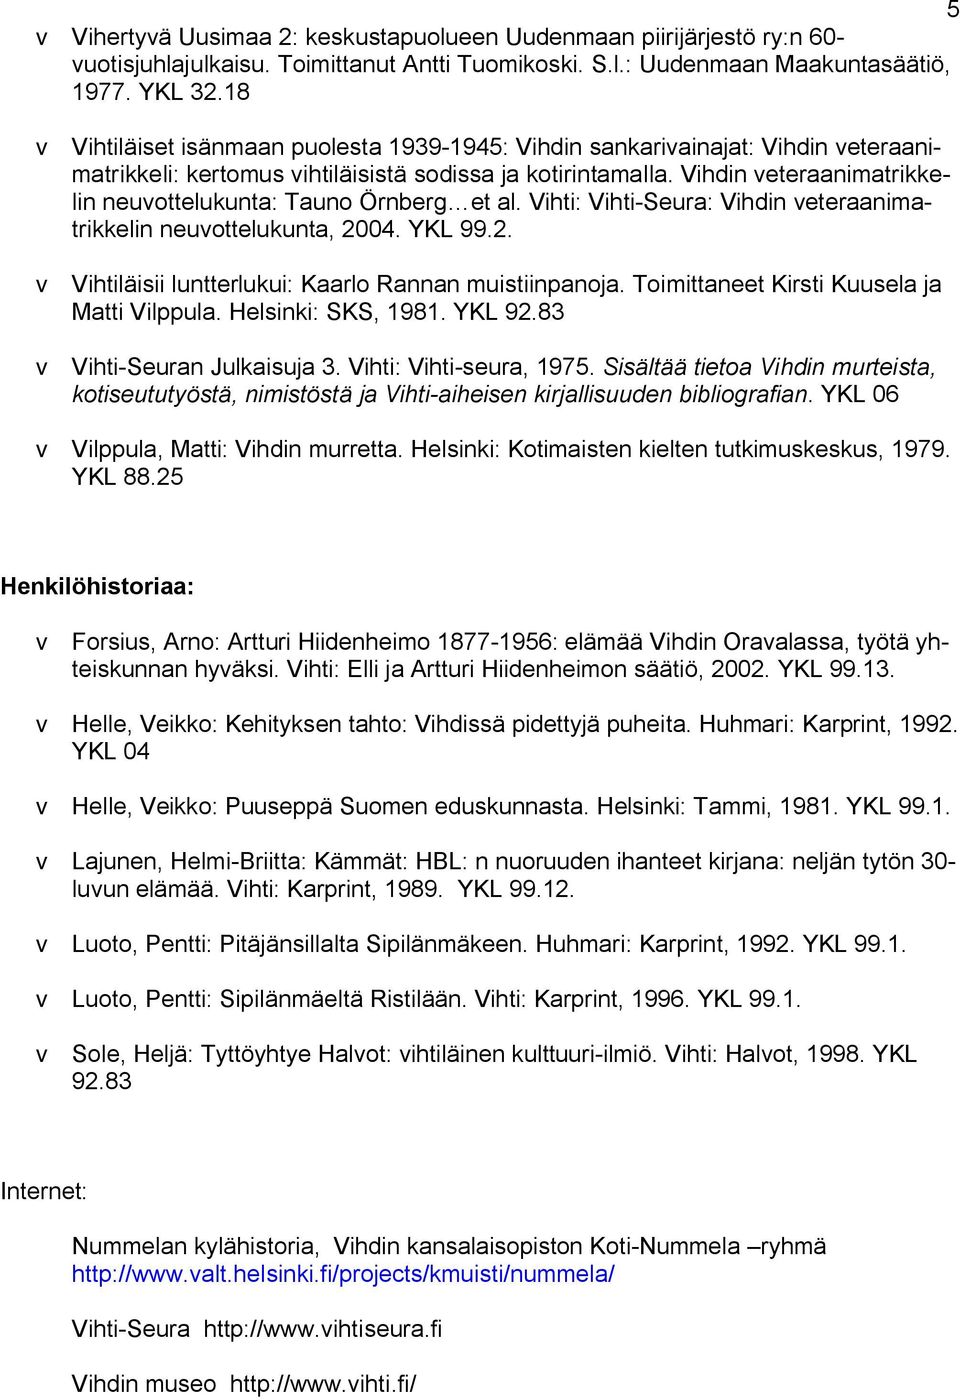 Vihdin veteraanimatrikkelin neuvottelukunta: Tauno Örnberg et al. Vihti: Vihti-Seura: Vihdin veteraanimatrikkelin neuvottelukunta, 2004. YKL 99.2. v Vihtiläisii luntterlukui: Kaarlo Rannan muistiinpanoja.